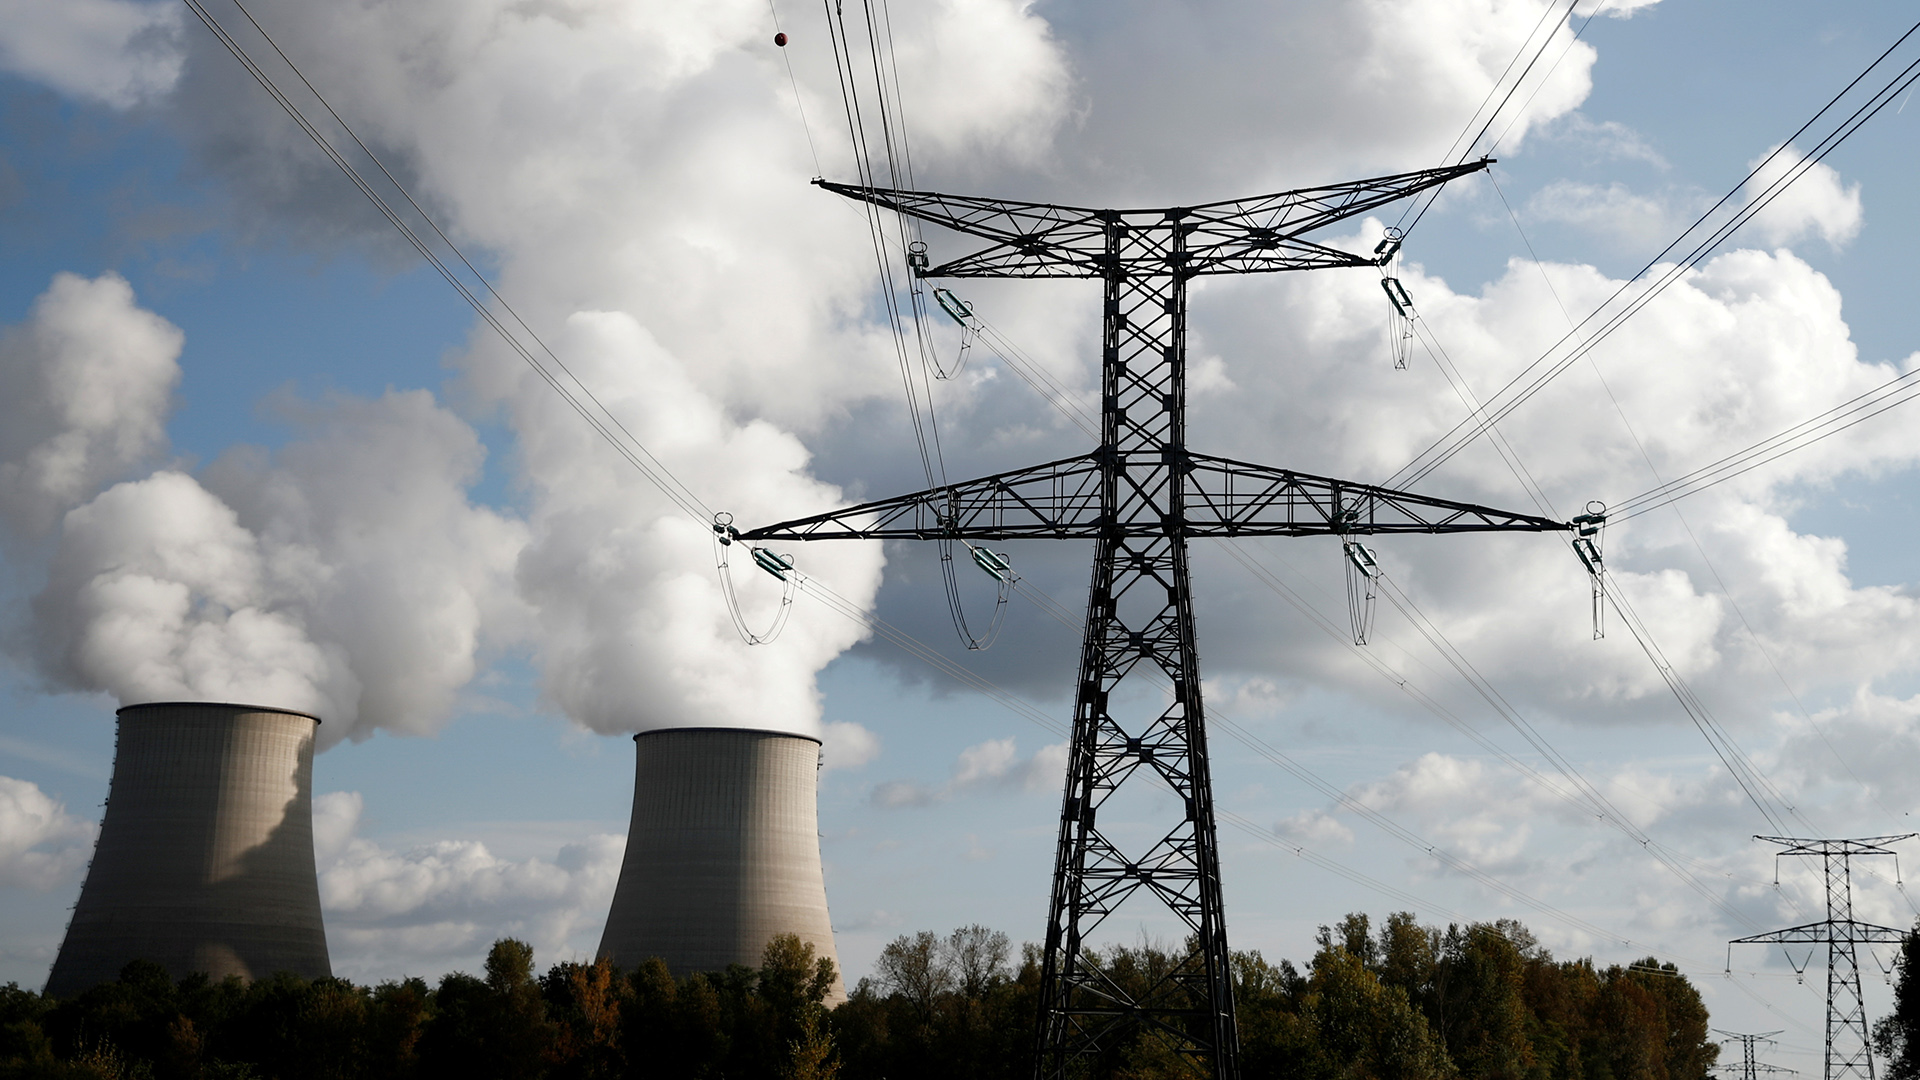 Dampf steigt aus den Kühltürmen des Kernkraftwerks von Electricite de France (EDF) in Belleville-sur-Loire, Frankreich, auf. | REUTERS